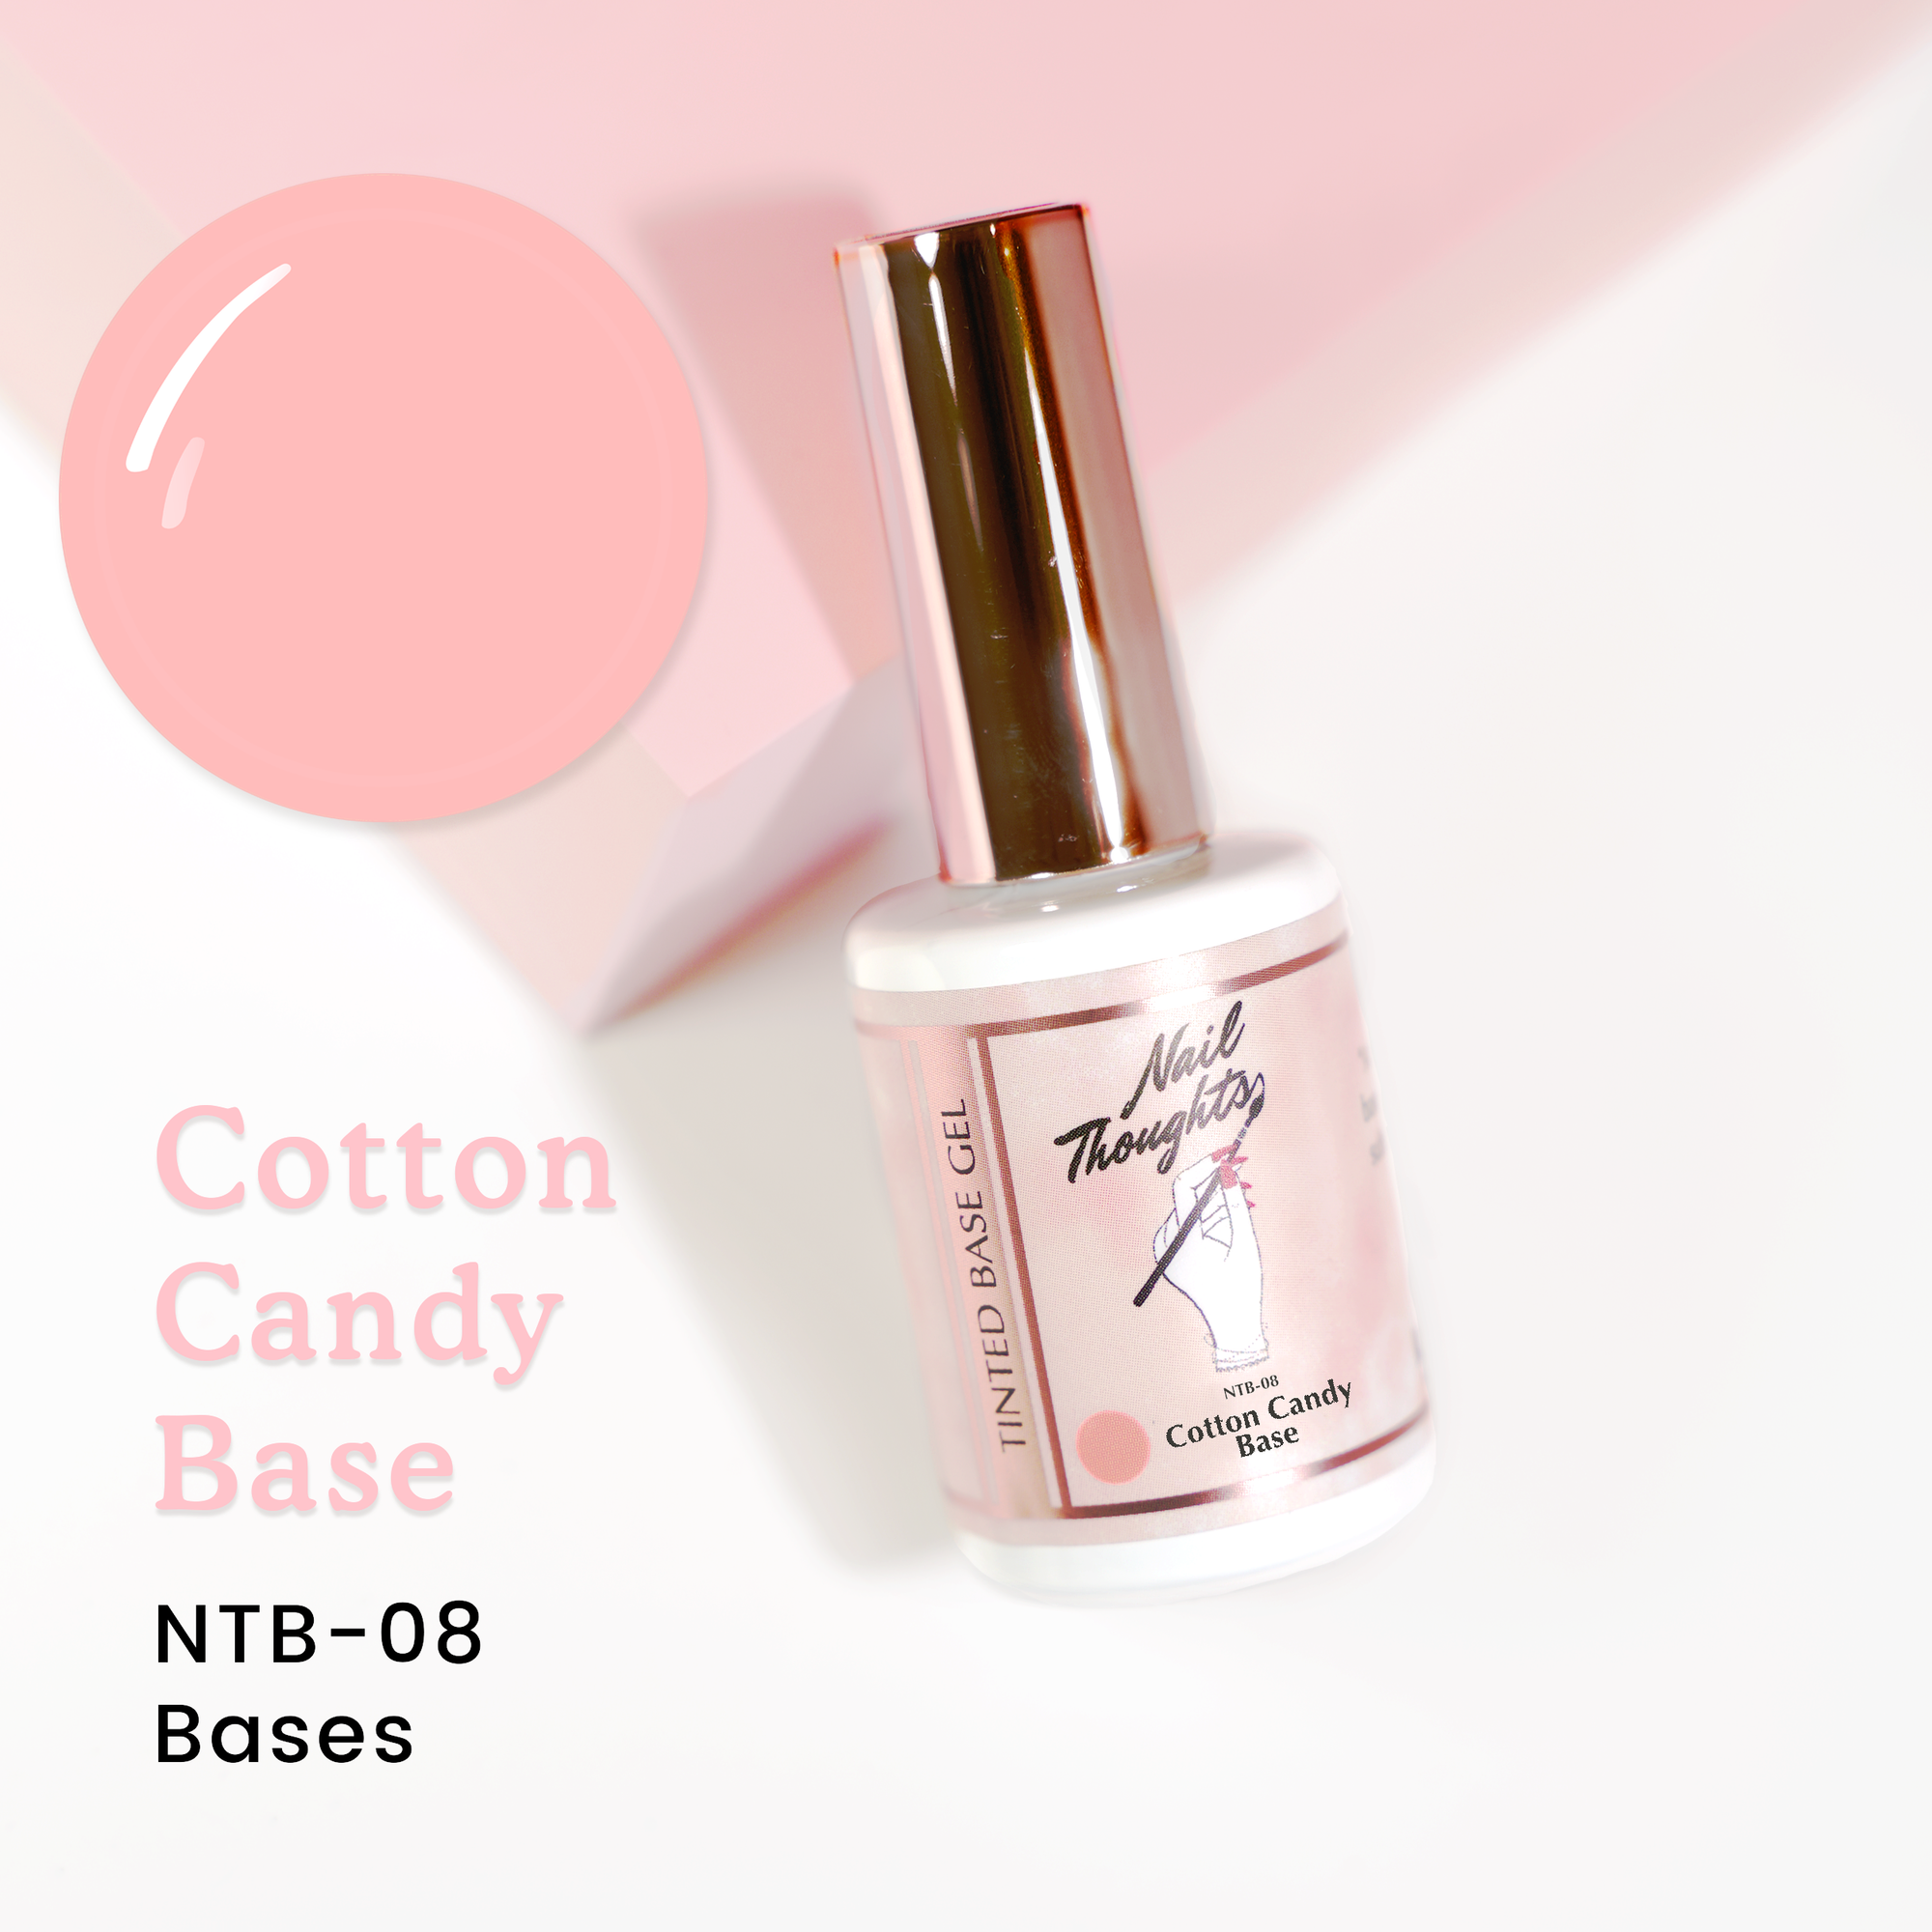 Cotton Candy Base NTB-08